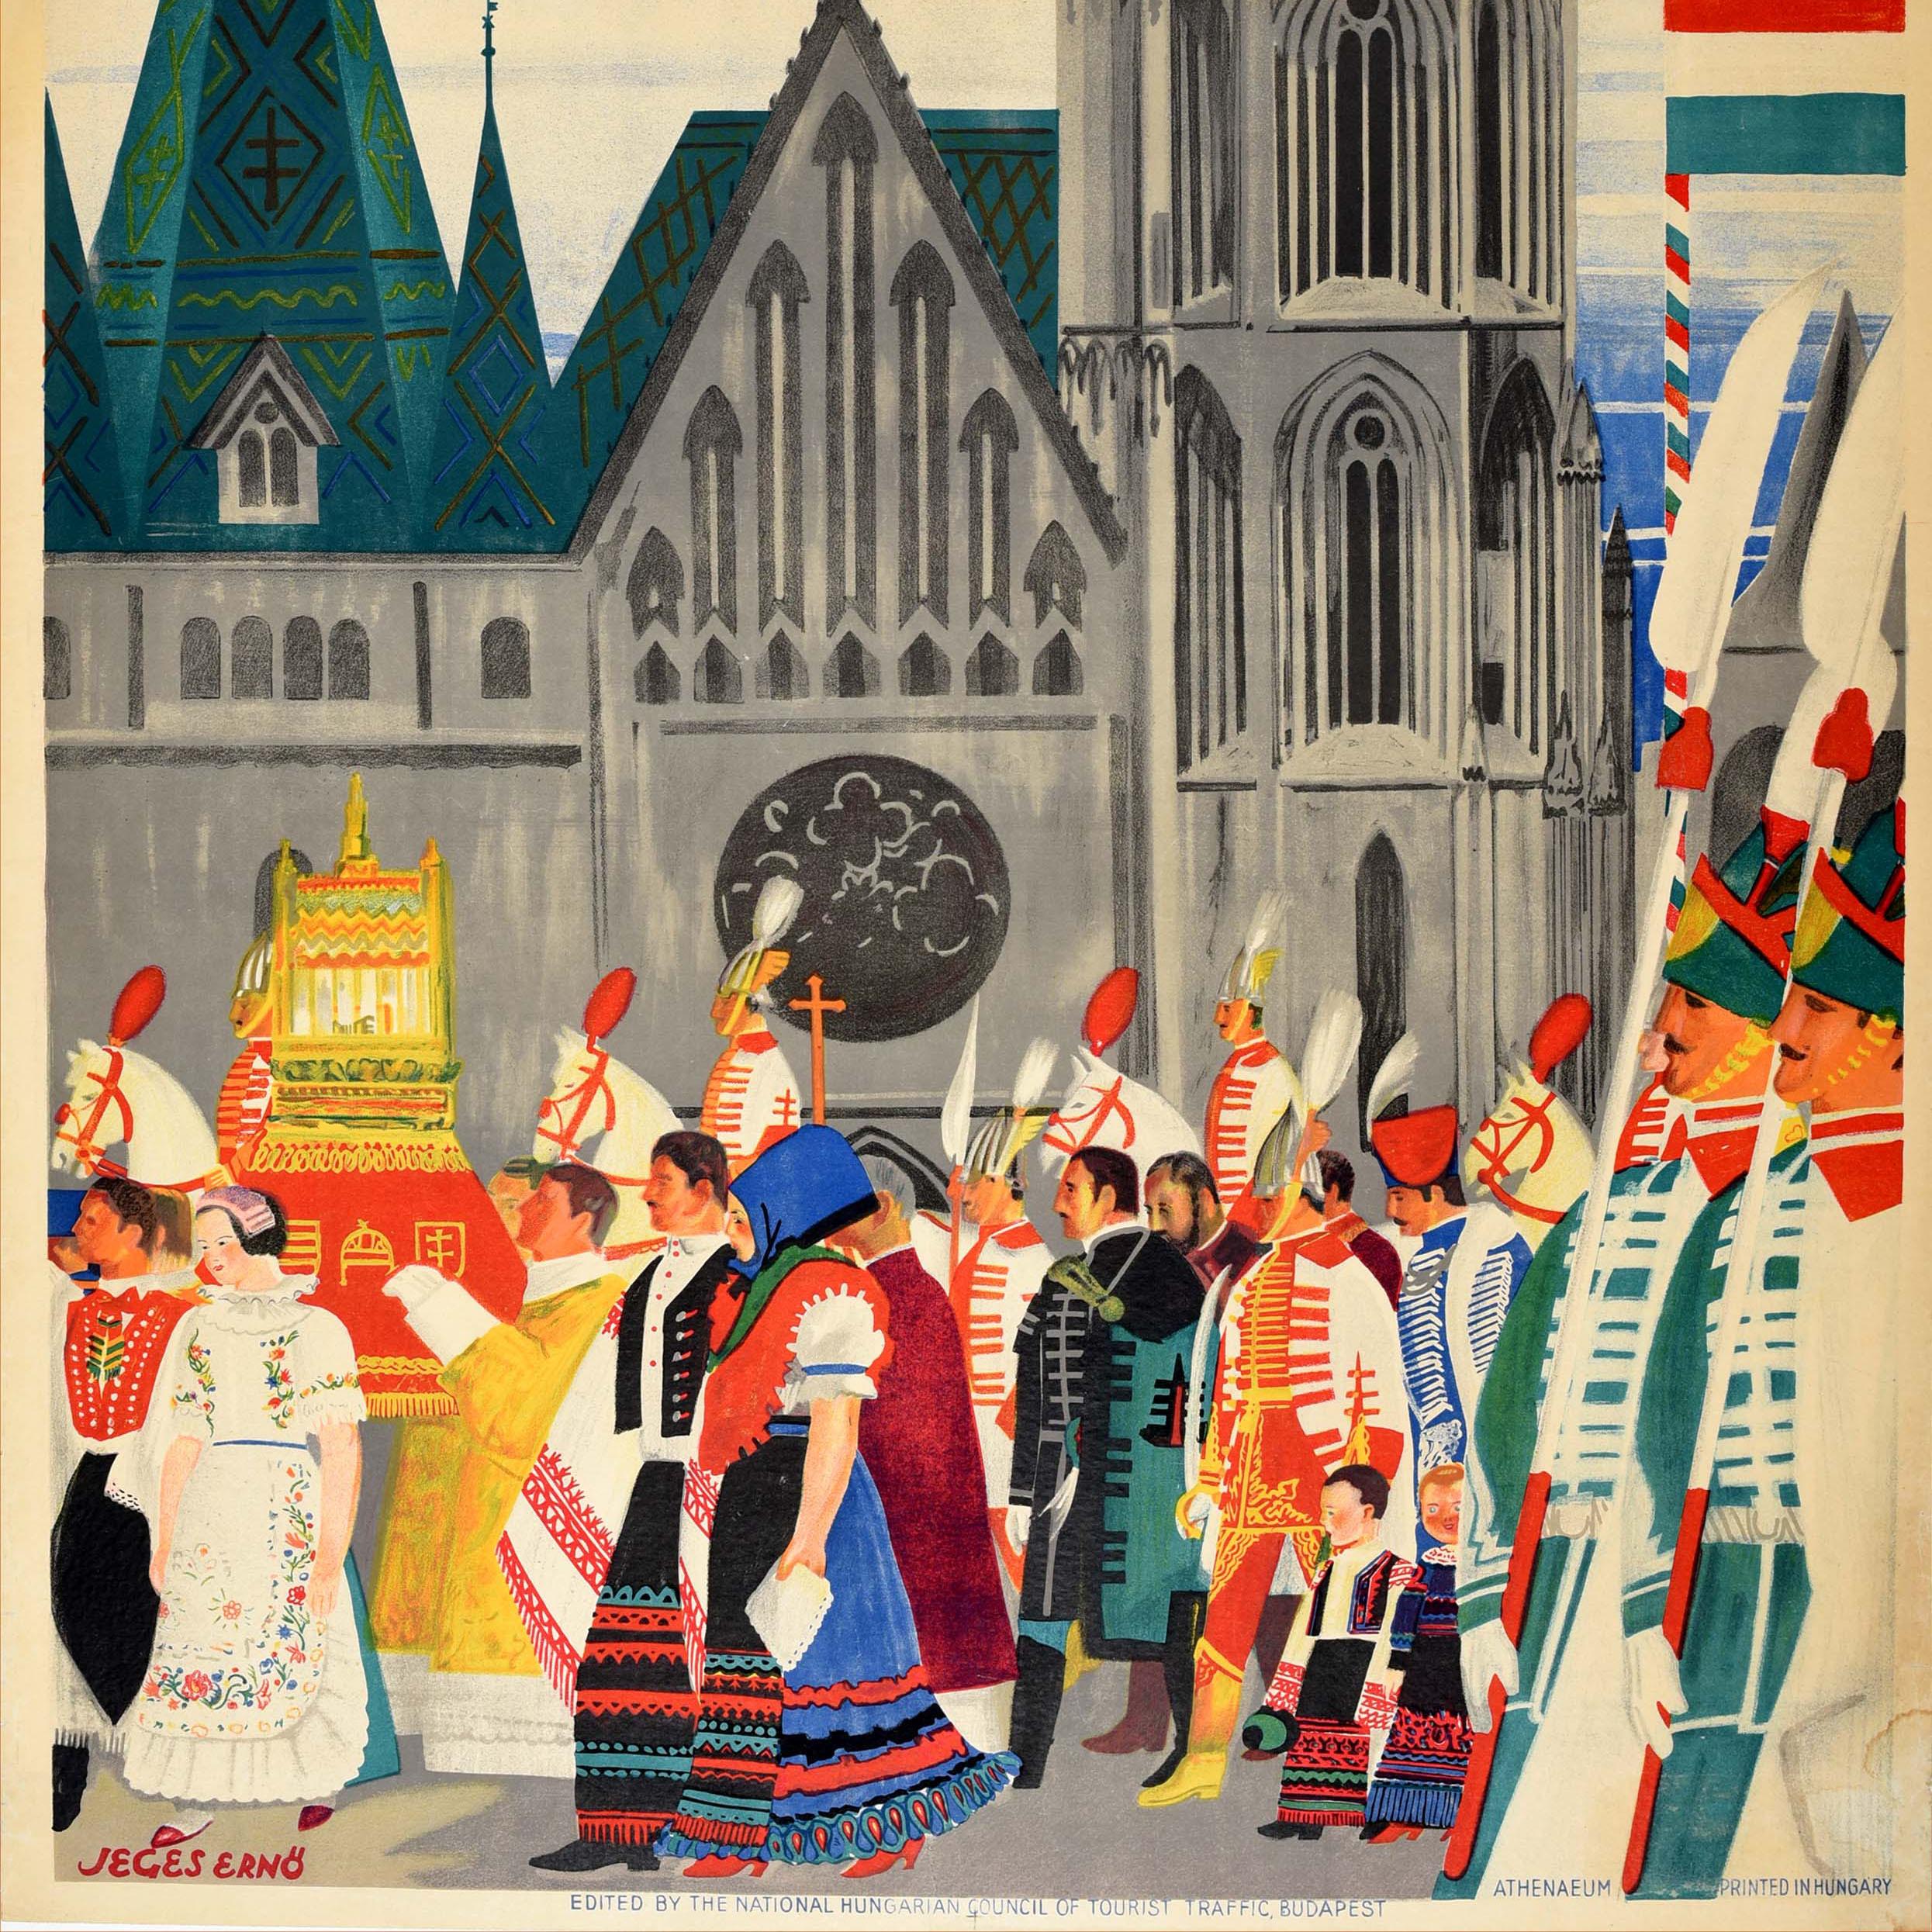 Affiche de voyage vintage originale pour Budapest avec une superbe illustration de Jeges Erno (1898-1956) représentant une procession de festival de personnes en costume traditionnel passant devant l'église historique Matthias du 11e siècle sur la